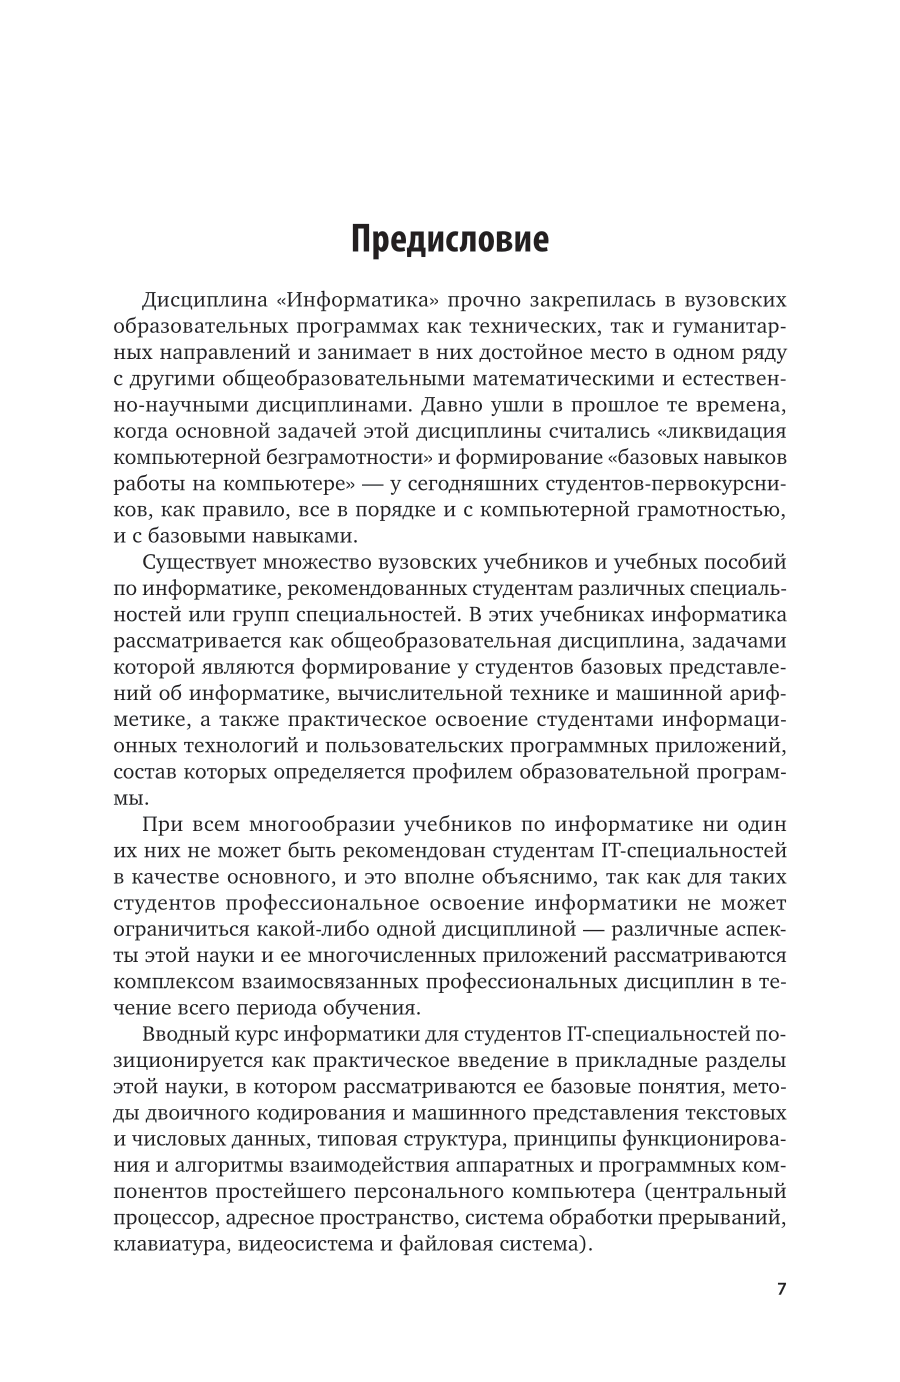 Информатика 2-е изд., пер. и доп. Учебное пособие для вузов - фото №7